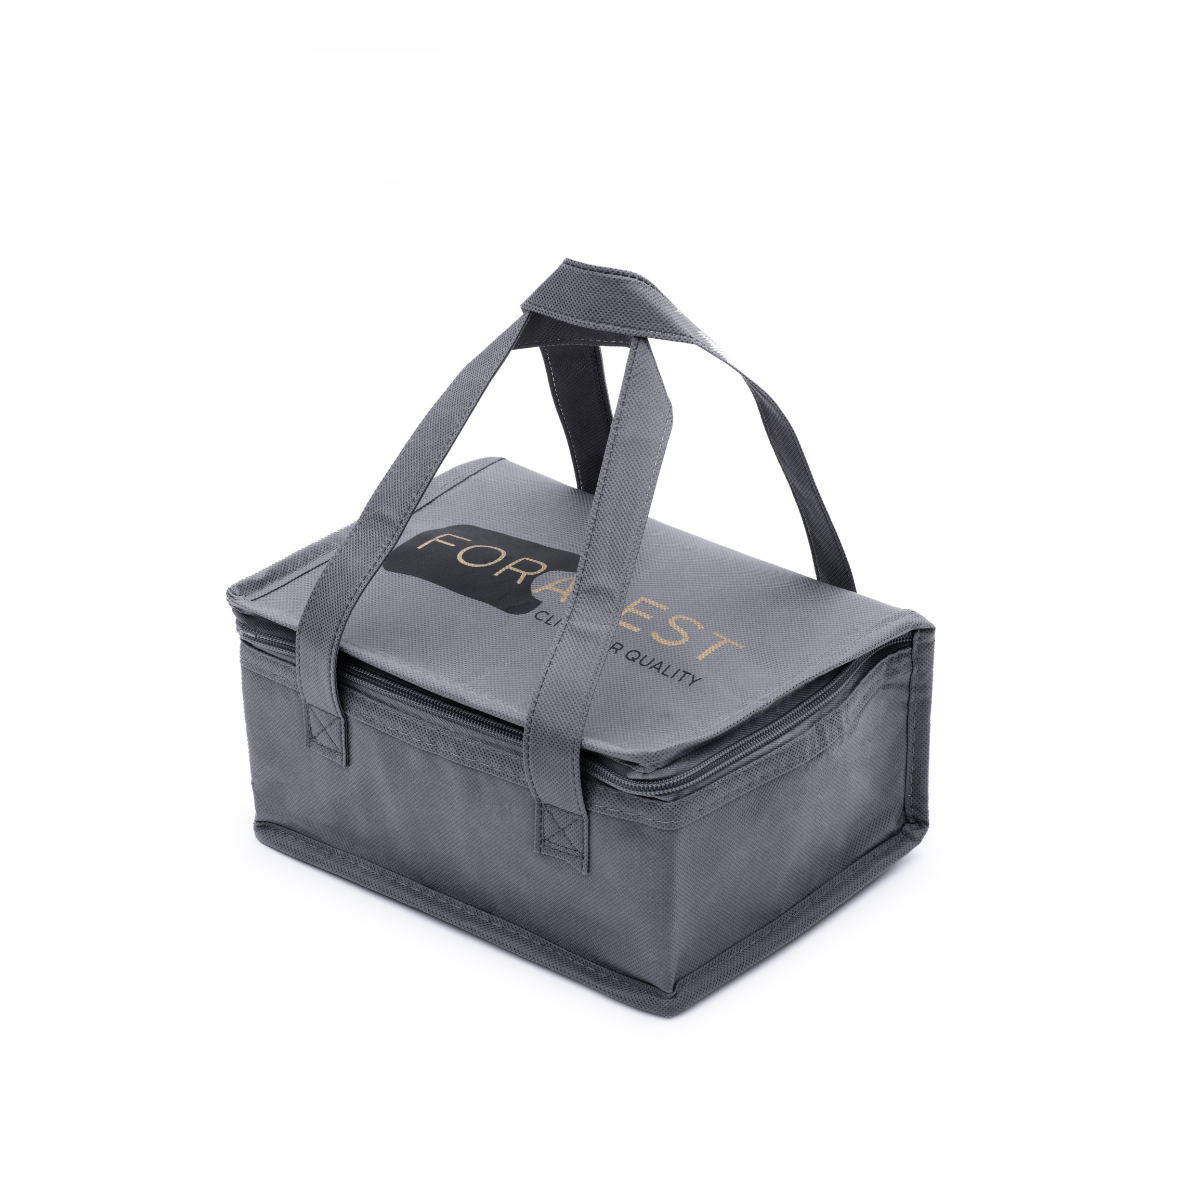 FORABEST Electric Lunch Box - Premium design